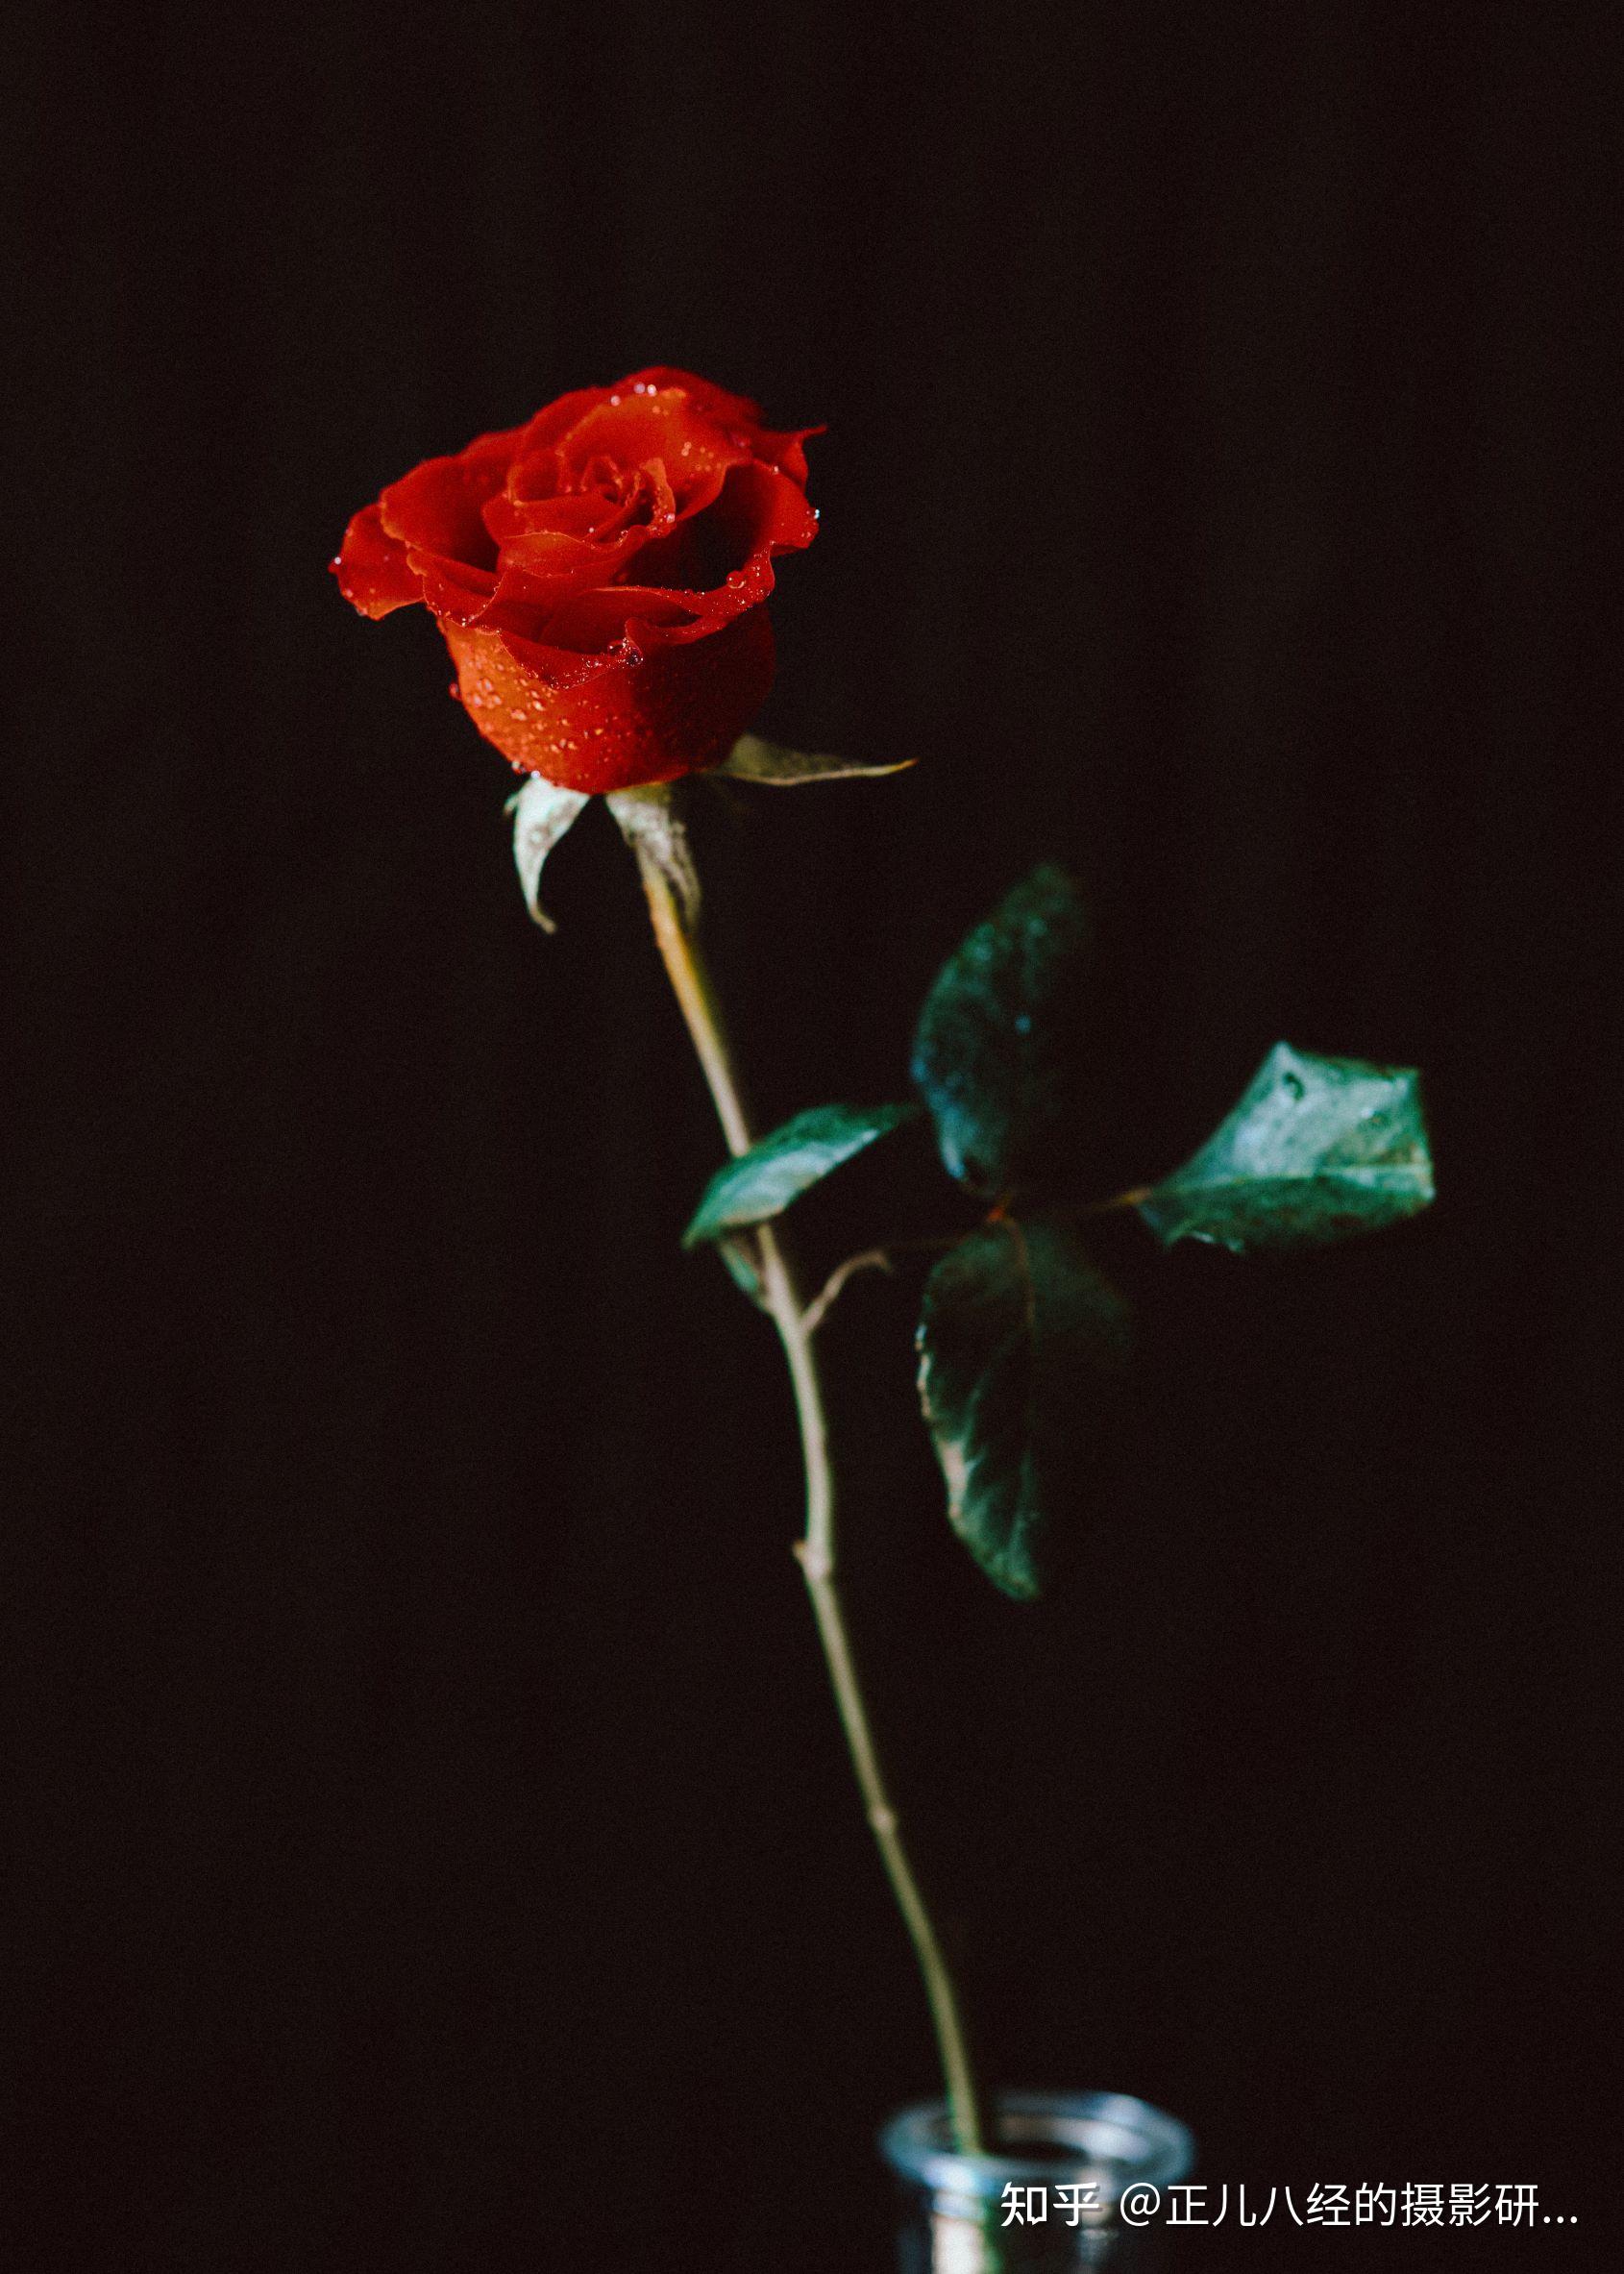 玫瑰图片分享拍摄花是比较锻炼摄影功底的,如果